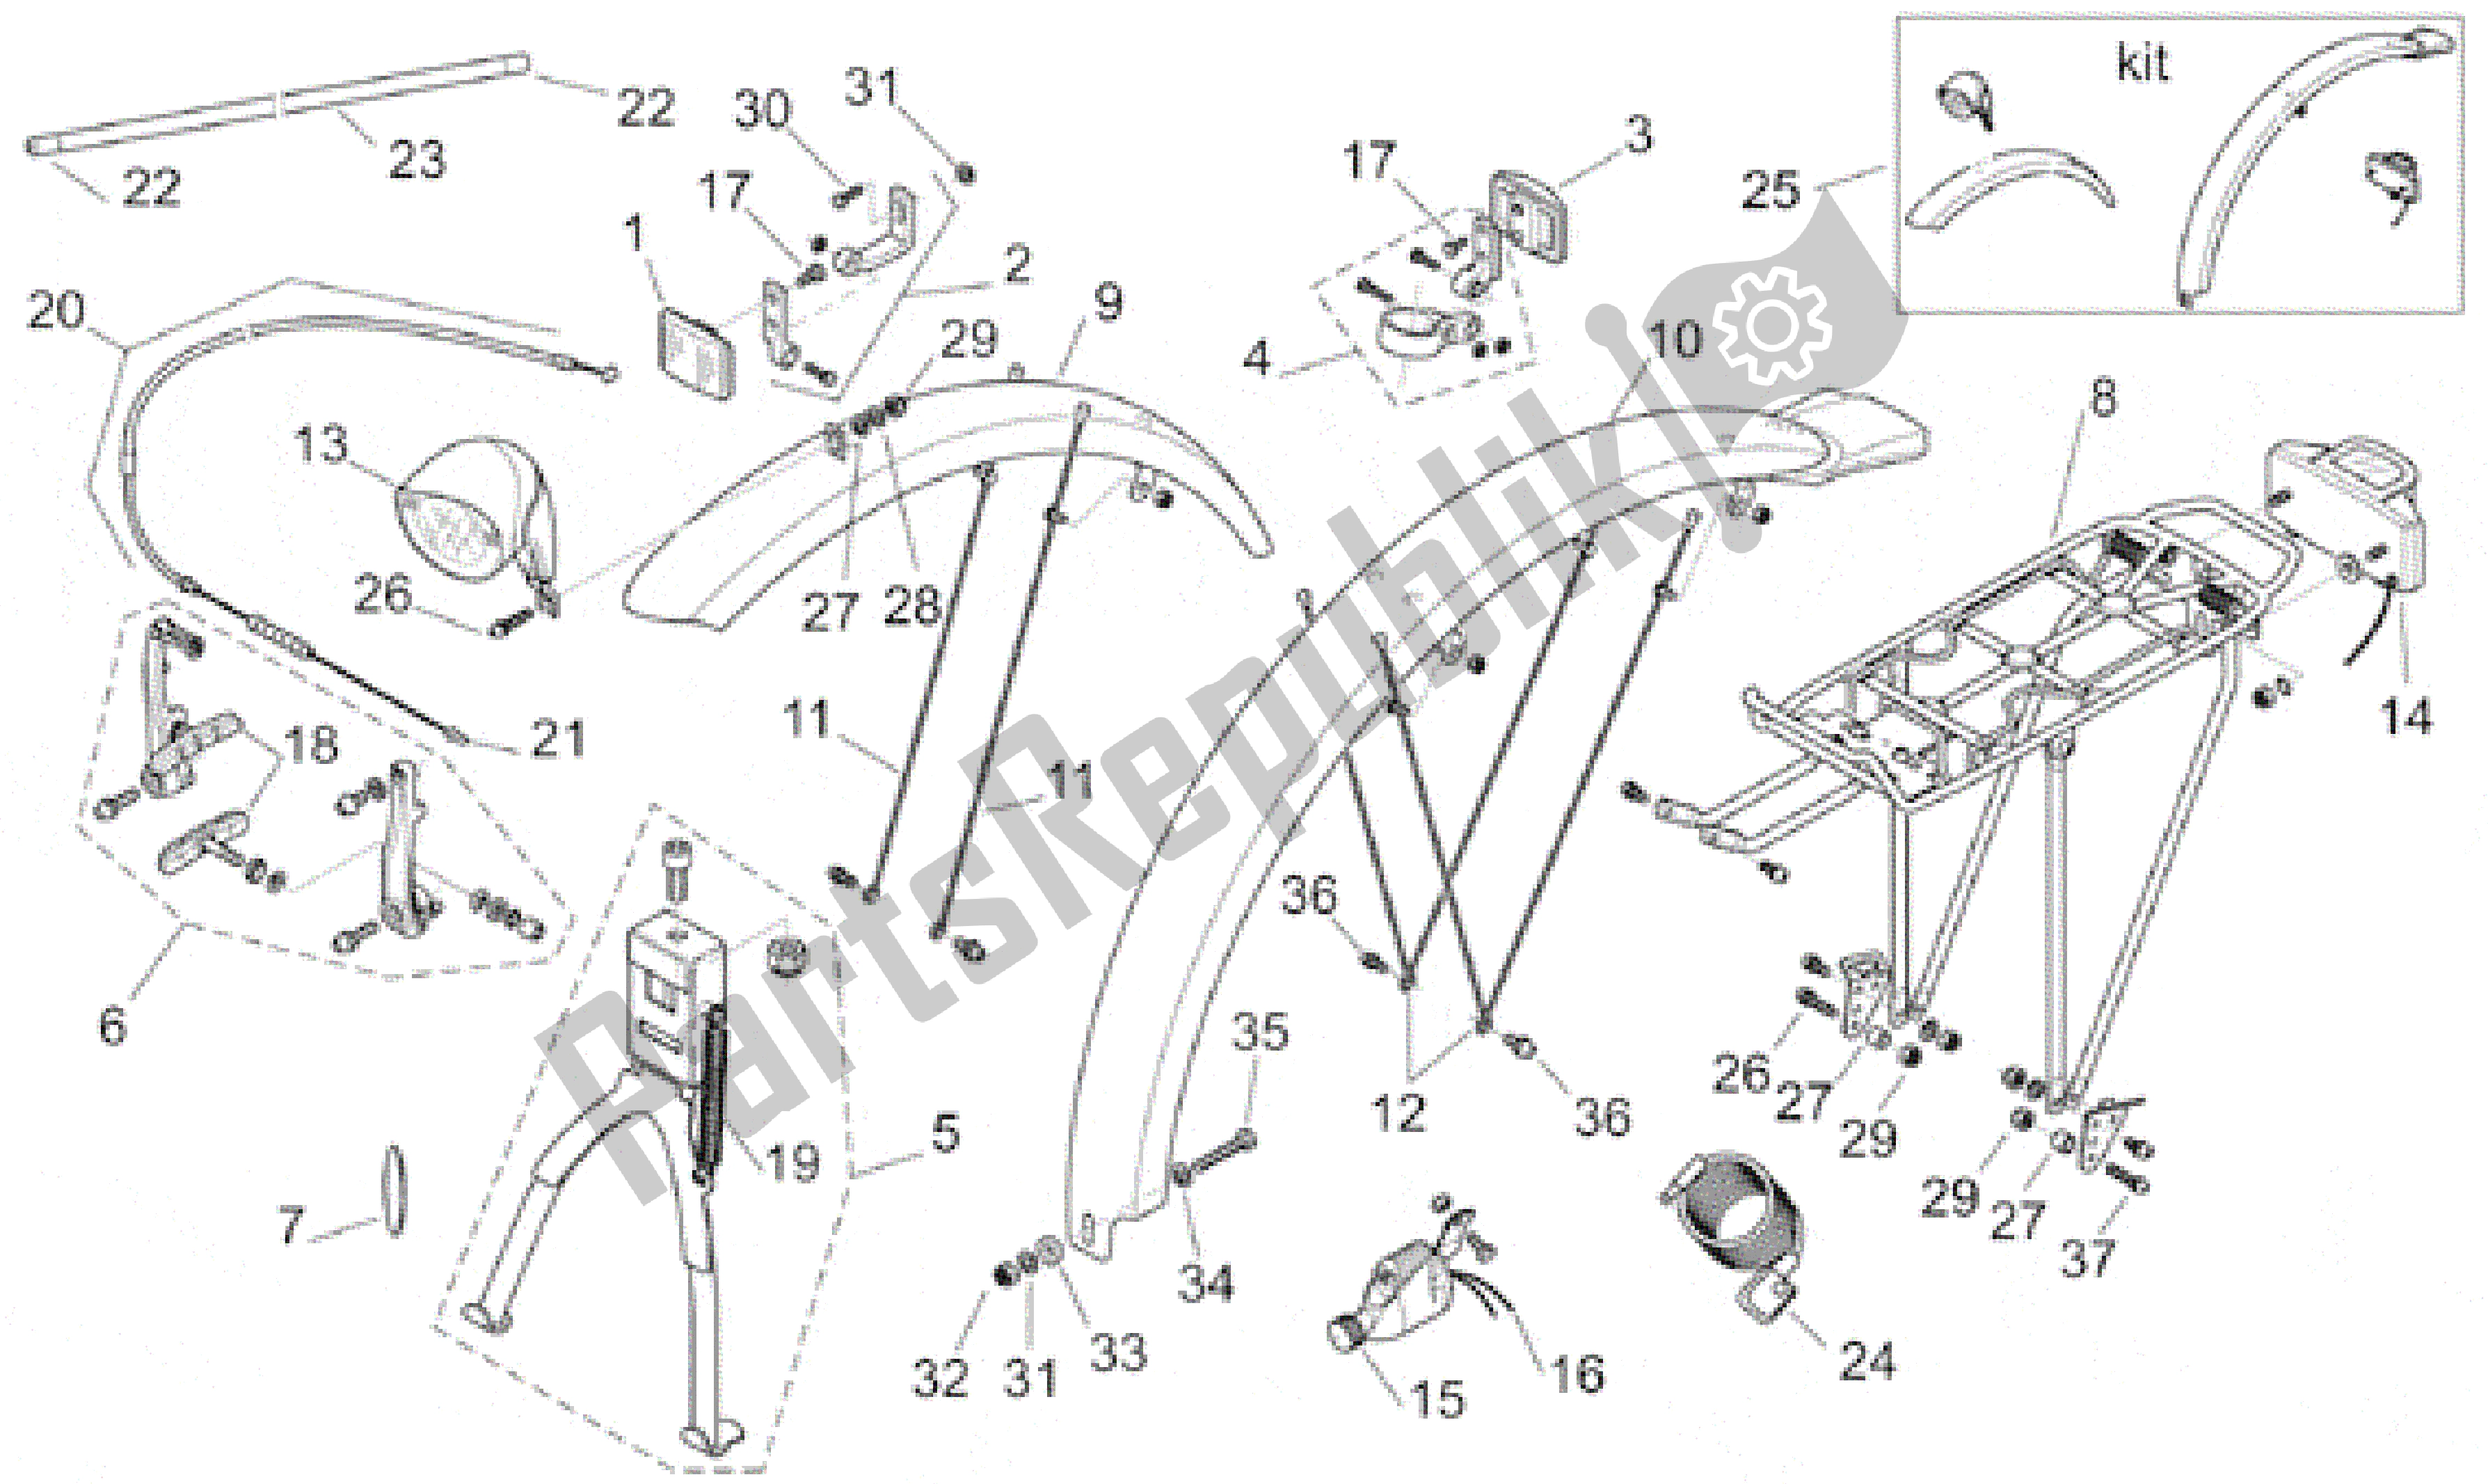 All parts for the Mudguards - Accessories of the Aprilia Bici Elettrica 0 2001